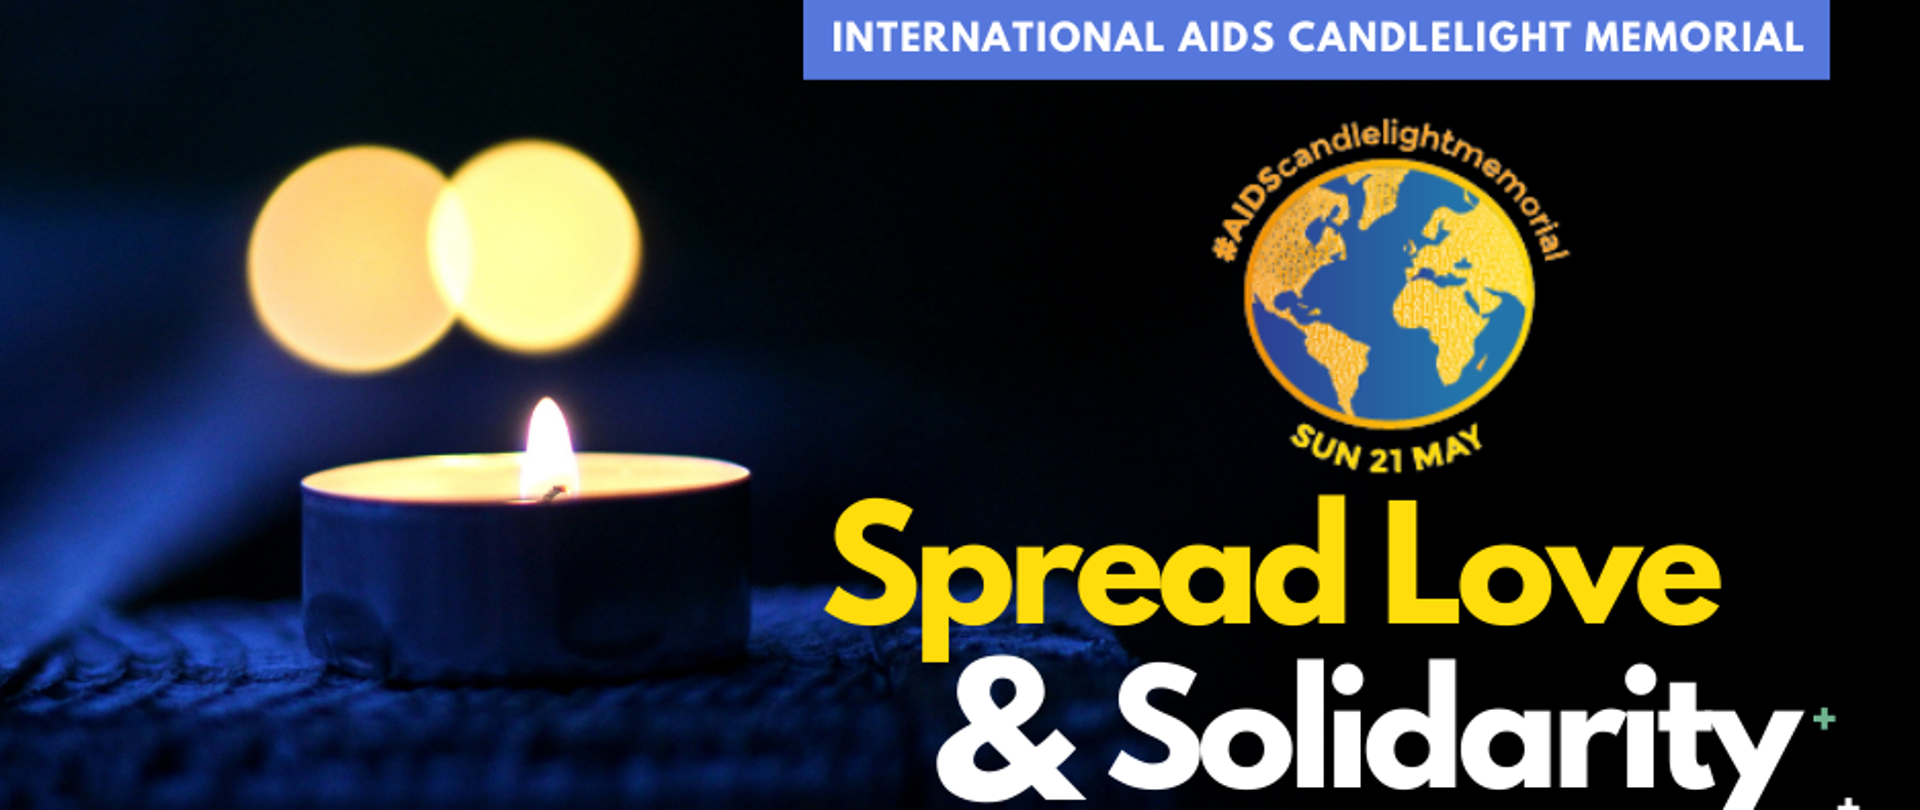 Międzynarodowy Dzień Pamięci o Zmarłych na AIDS – International AIDS Candlelight Memorial
21 maja 2023
